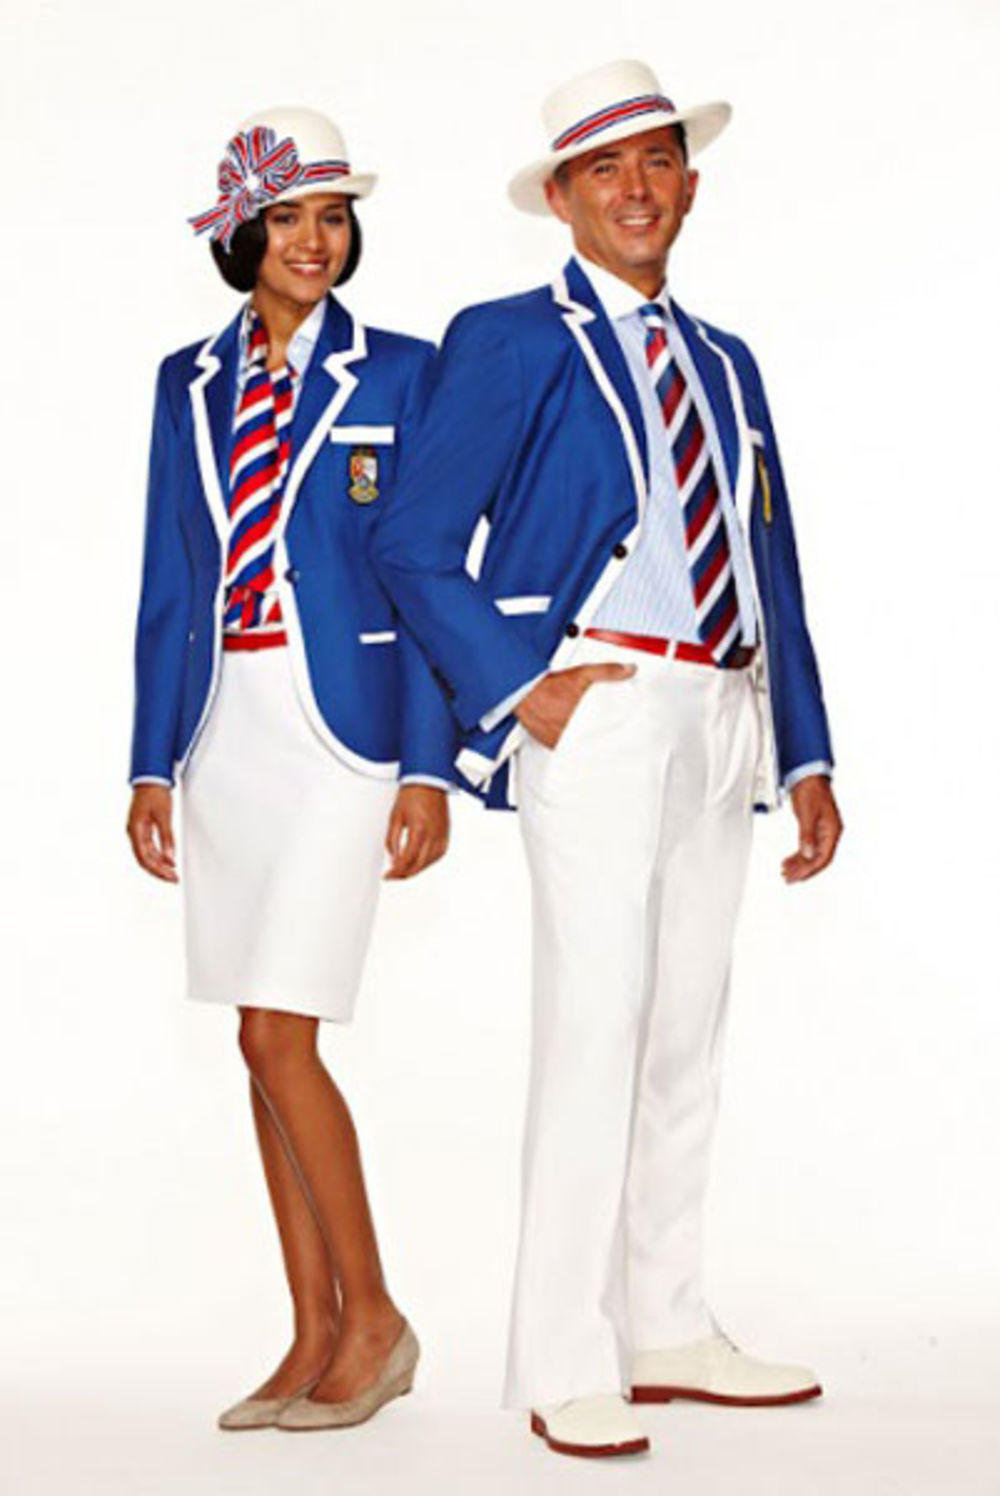 Neposredno pre početka Olimpijade 2012 u Londonu, zemlje učesnice su otkrile uniforme koje će nositi predstavnici njihovih timova.